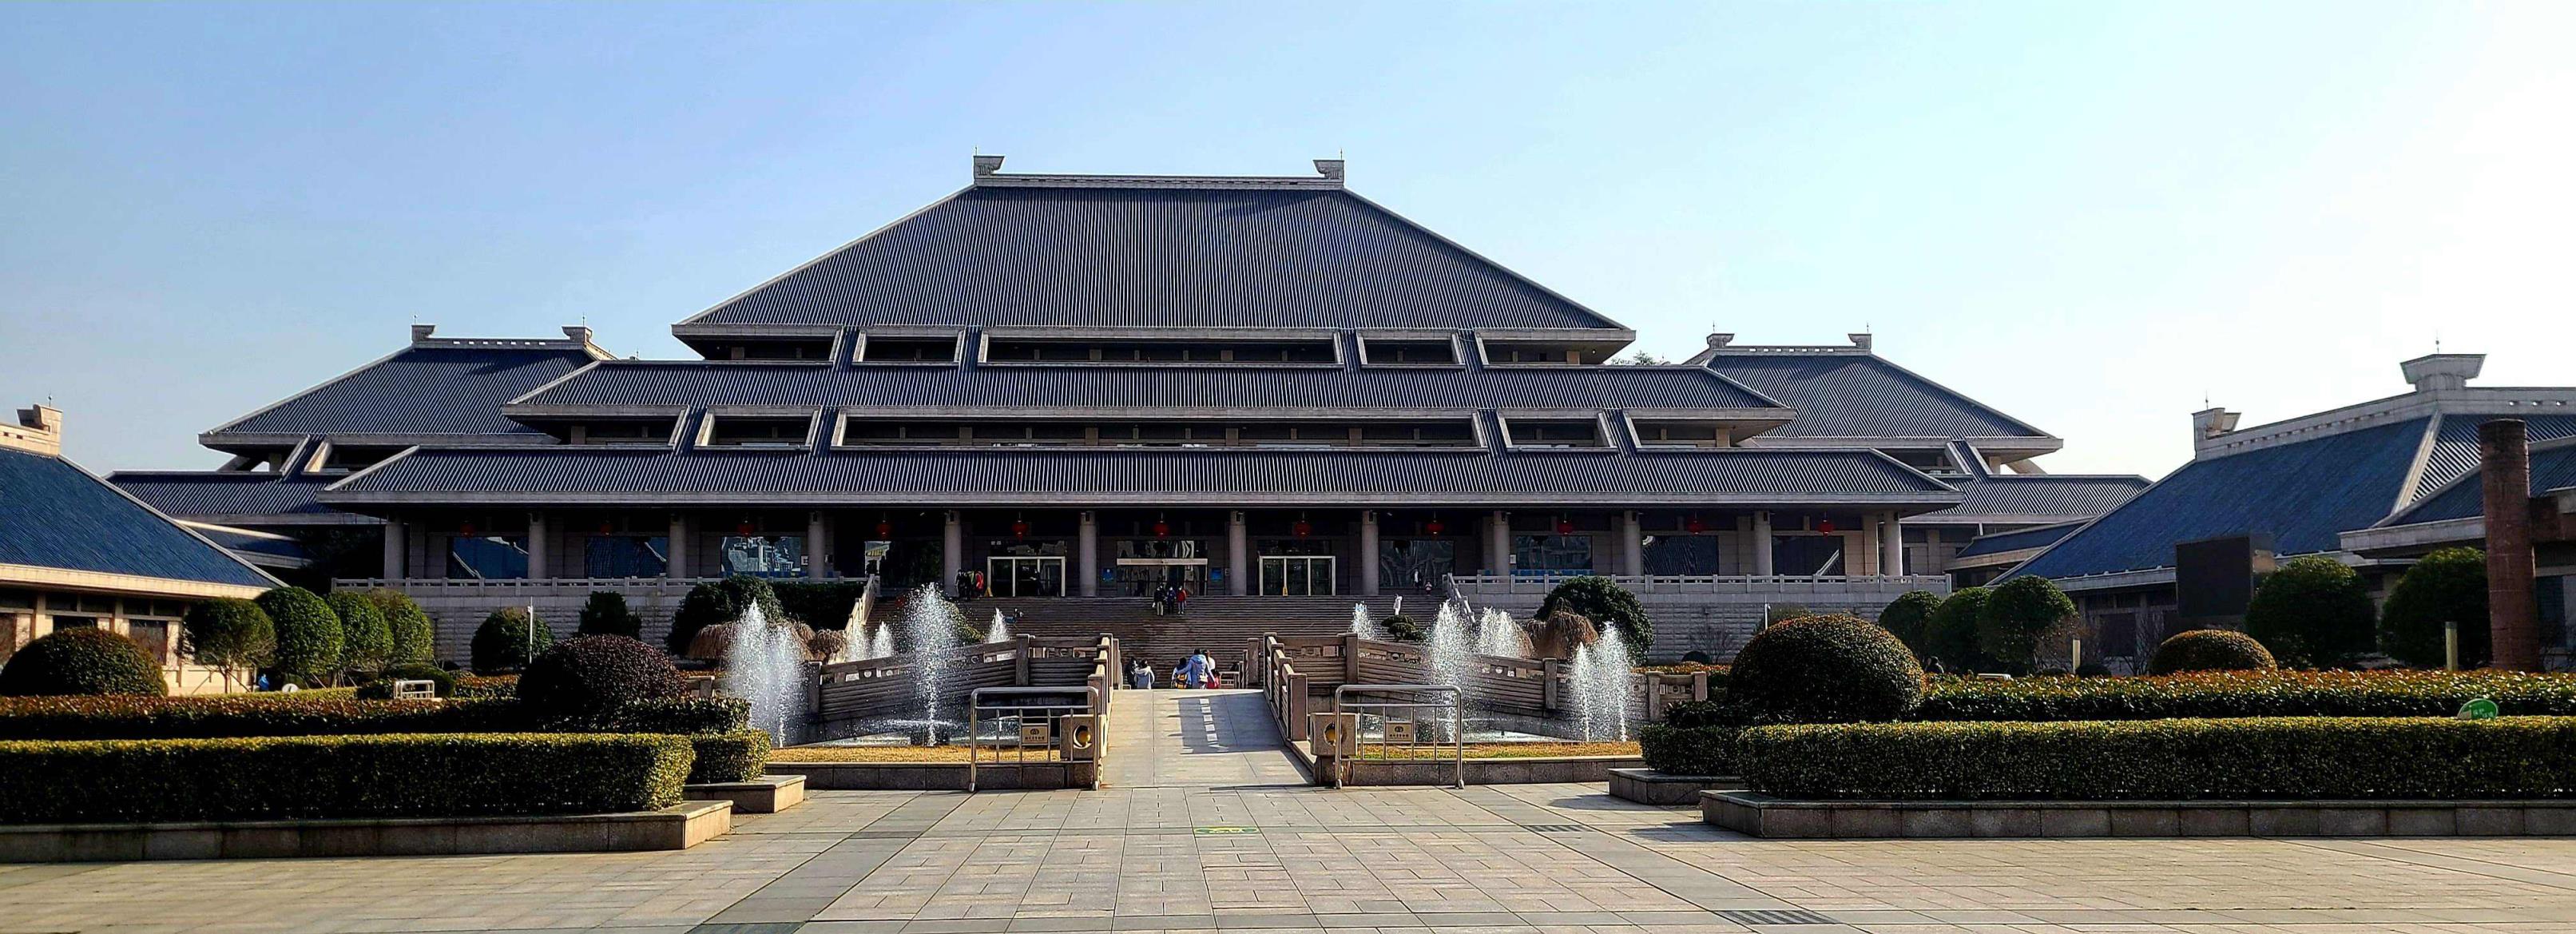 湖北省博物馆是中央与地方共建的八家国家级博物馆之一,是湖北省最为